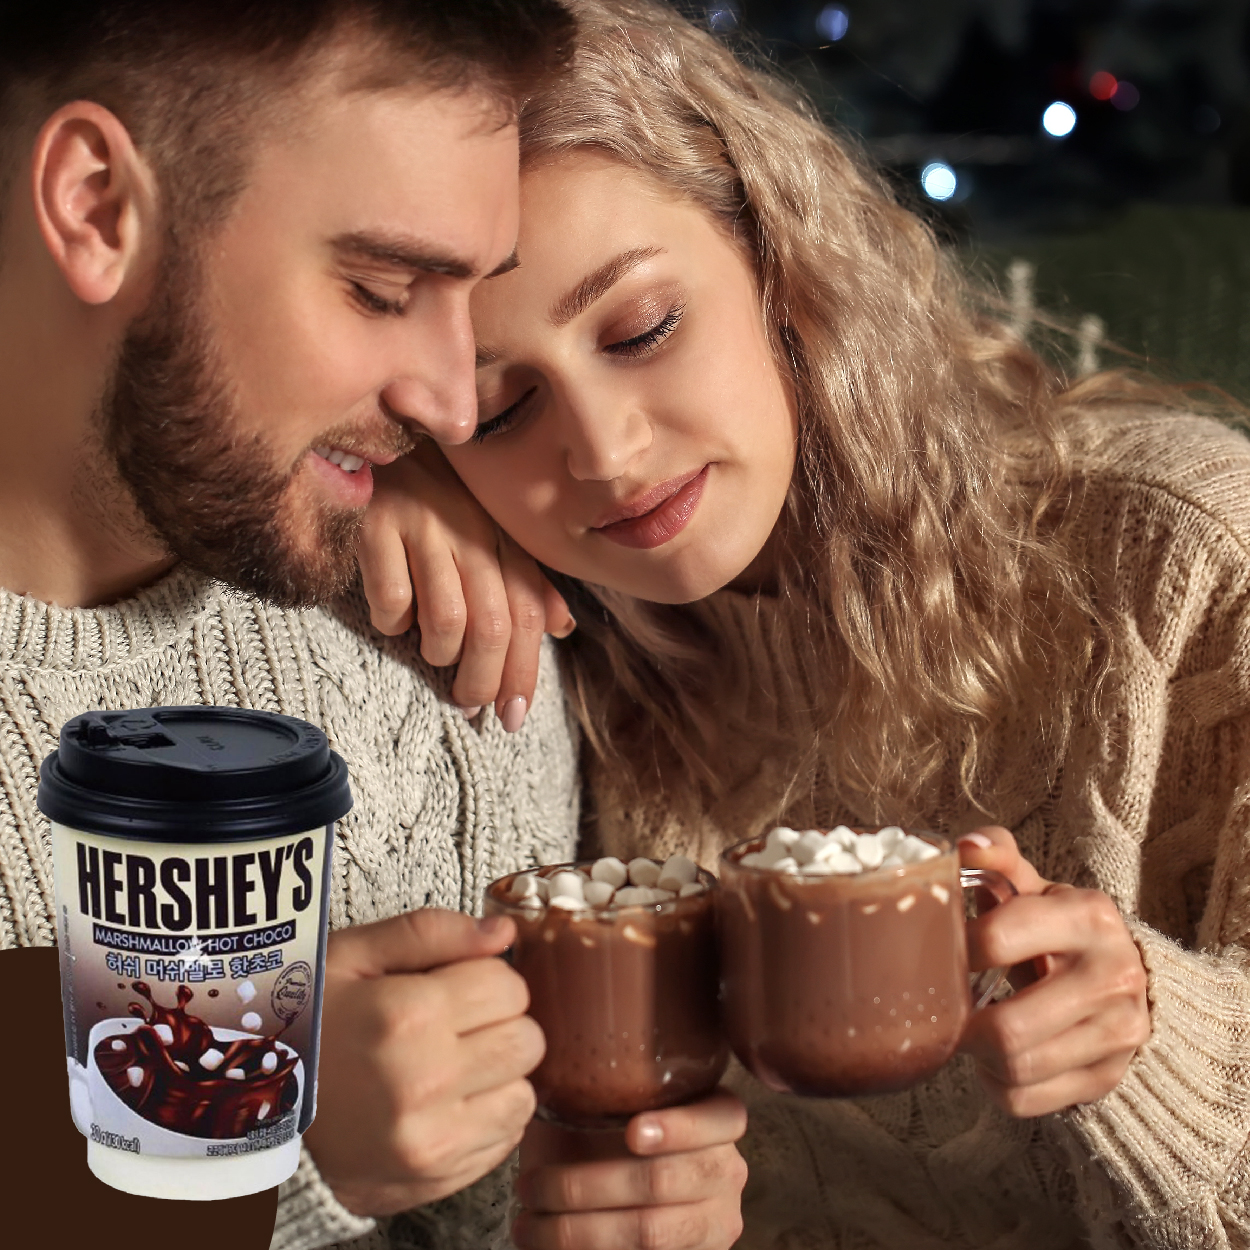 Hershey’s 雪花巧克力粉  冬天必喝熱可可 療癒系飲品撫慰你受傷的心靈